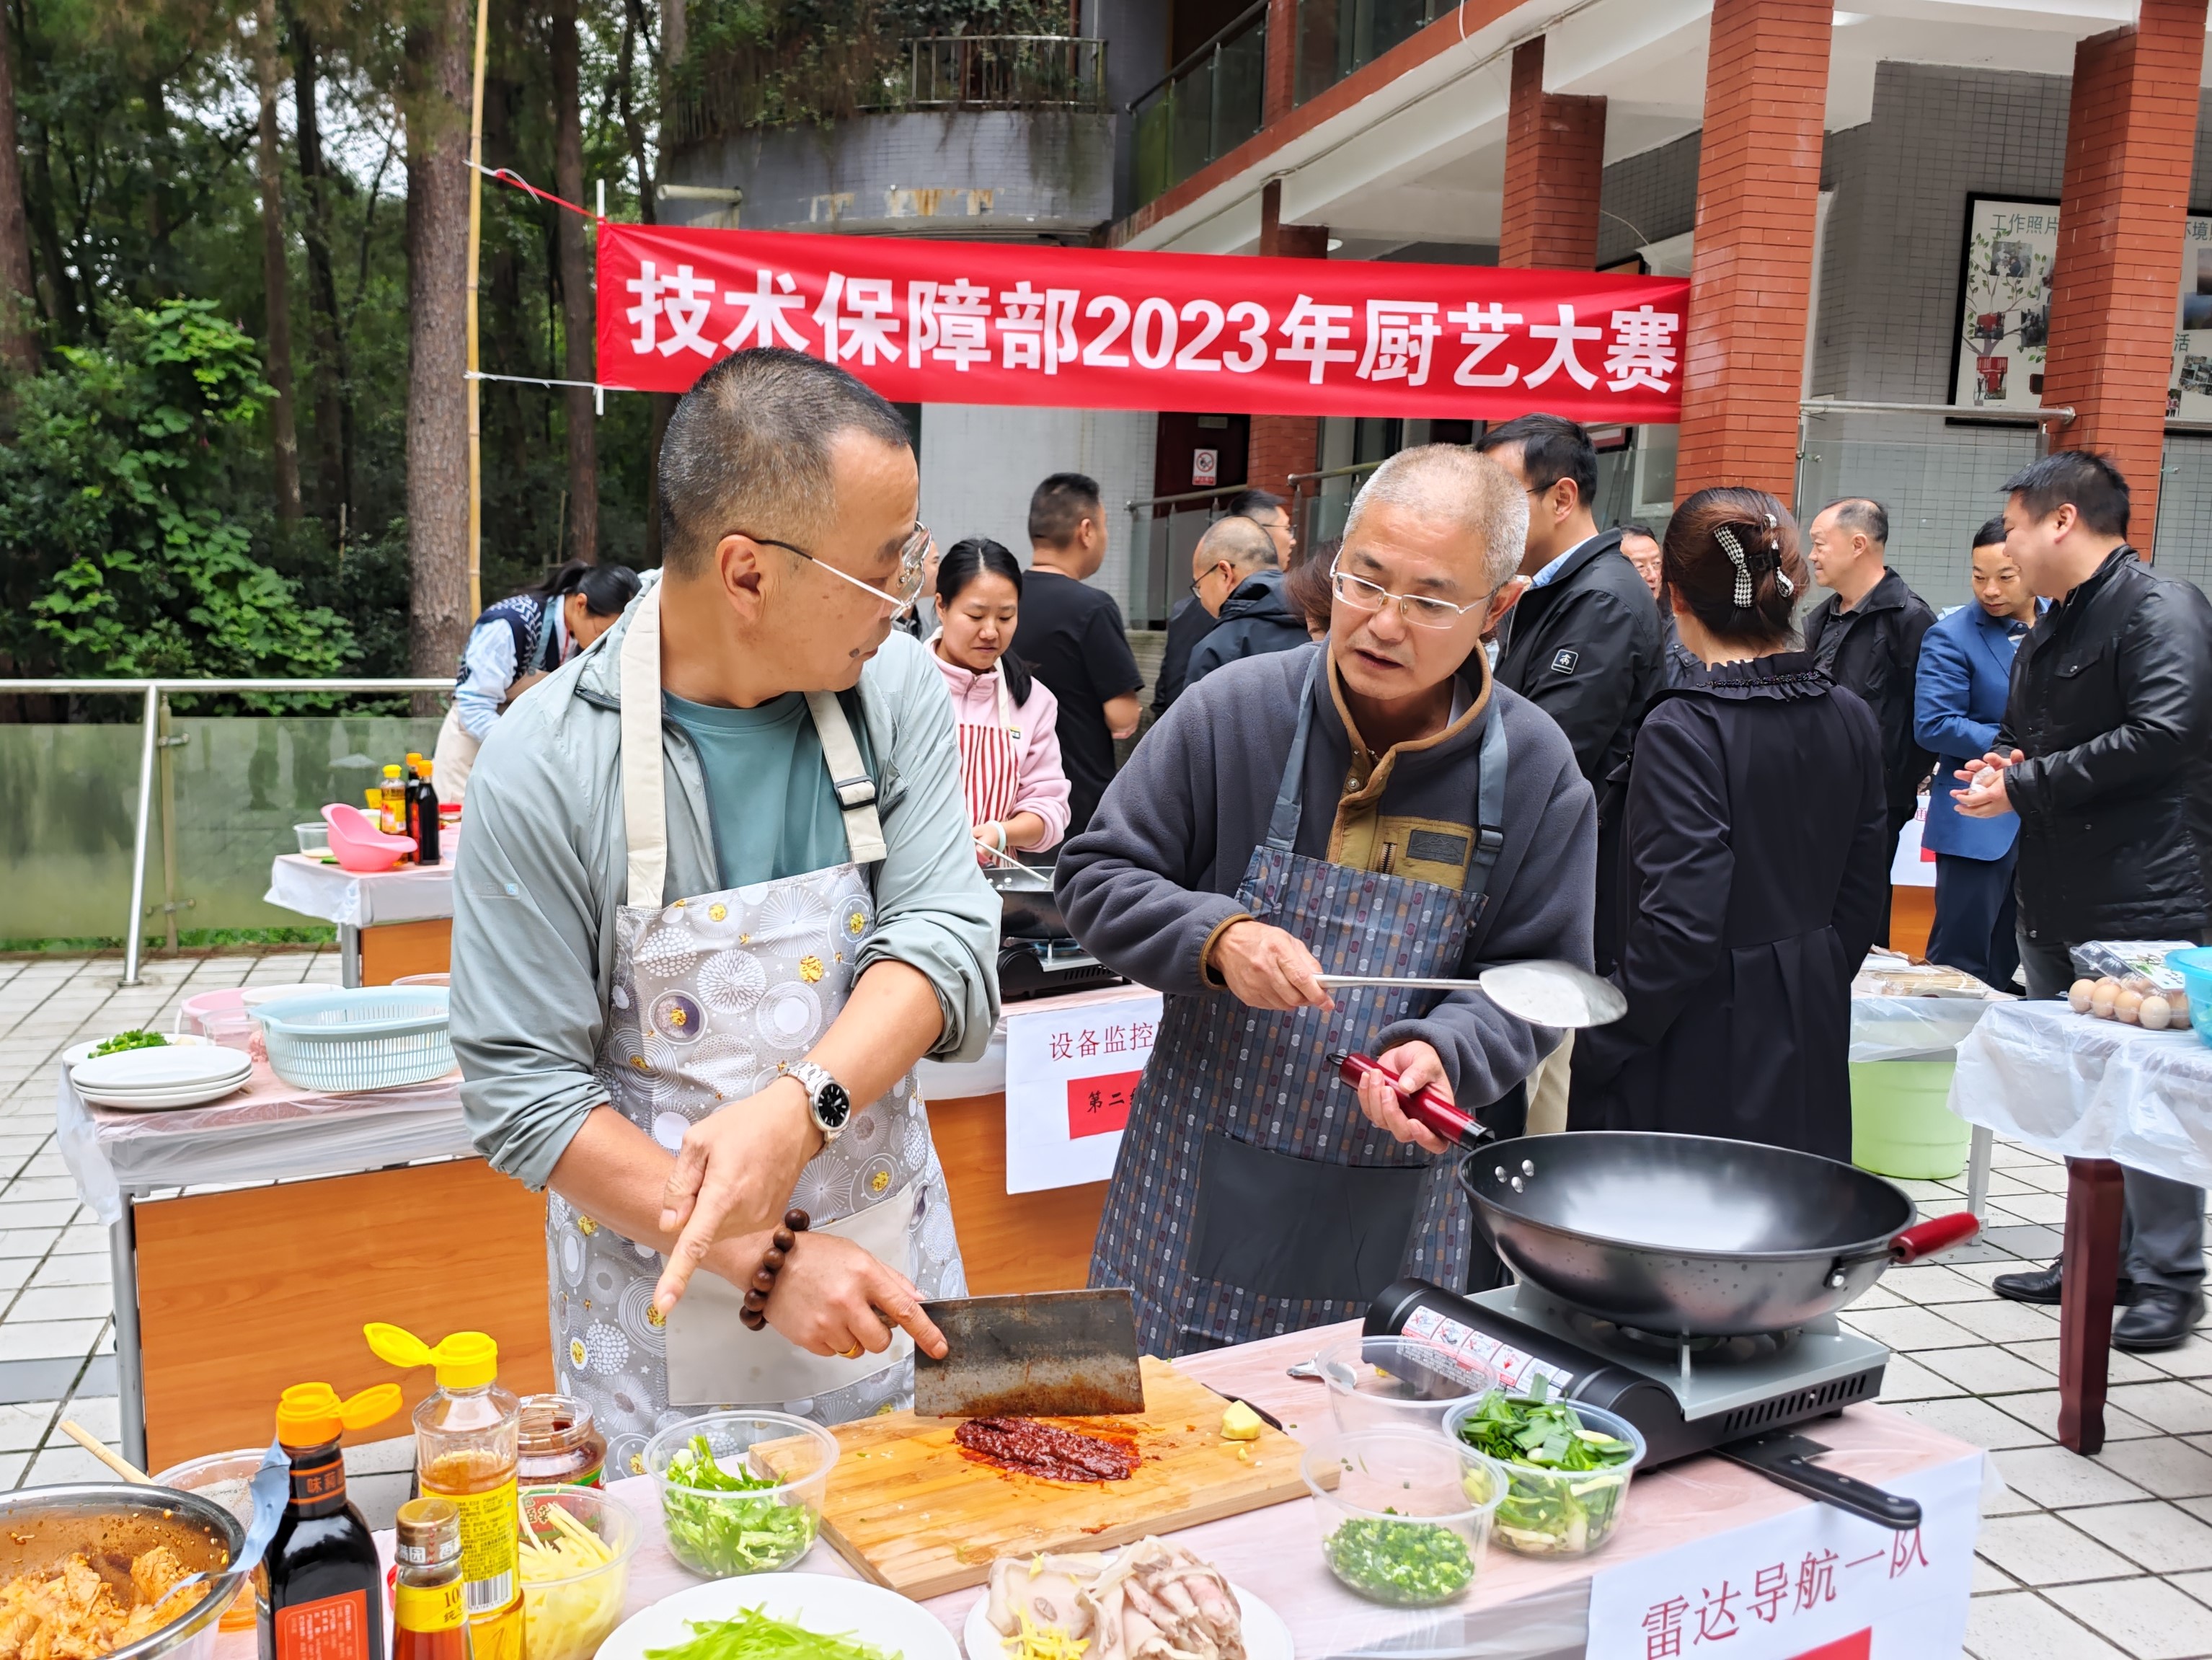 贵州空管分局技术保障部分工会开展厨艺大赛